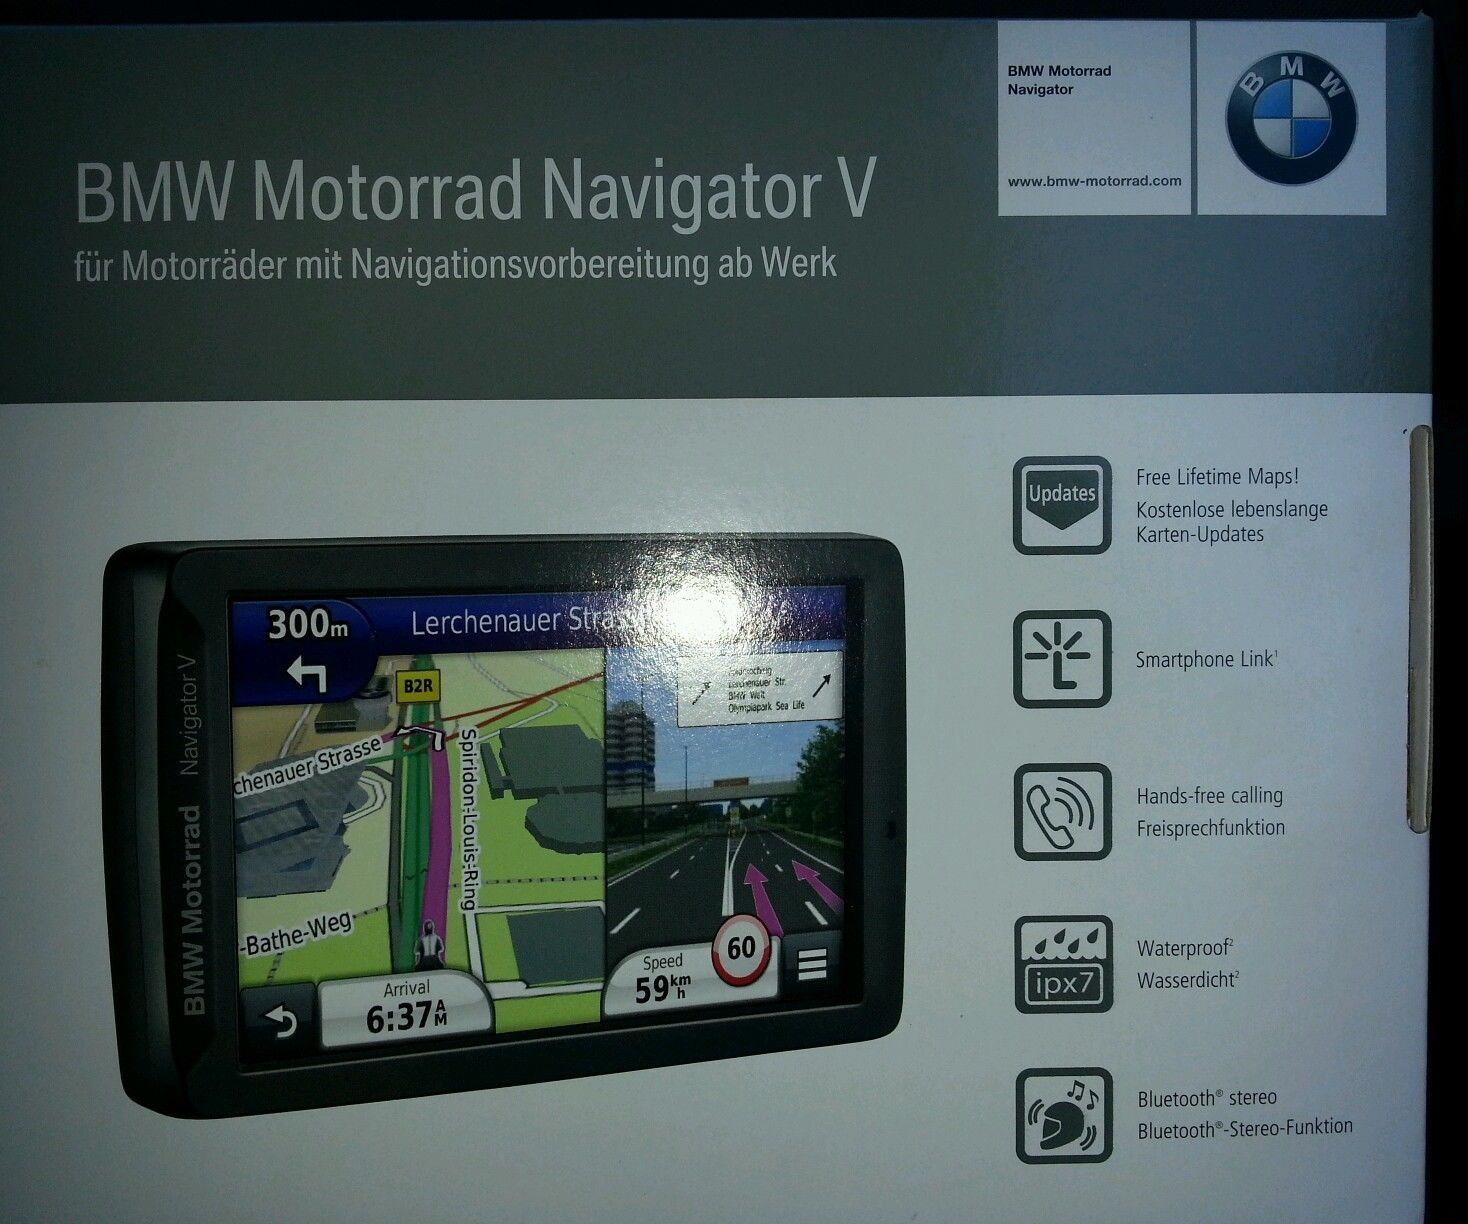 Bmw motorrad navigator ii update #7